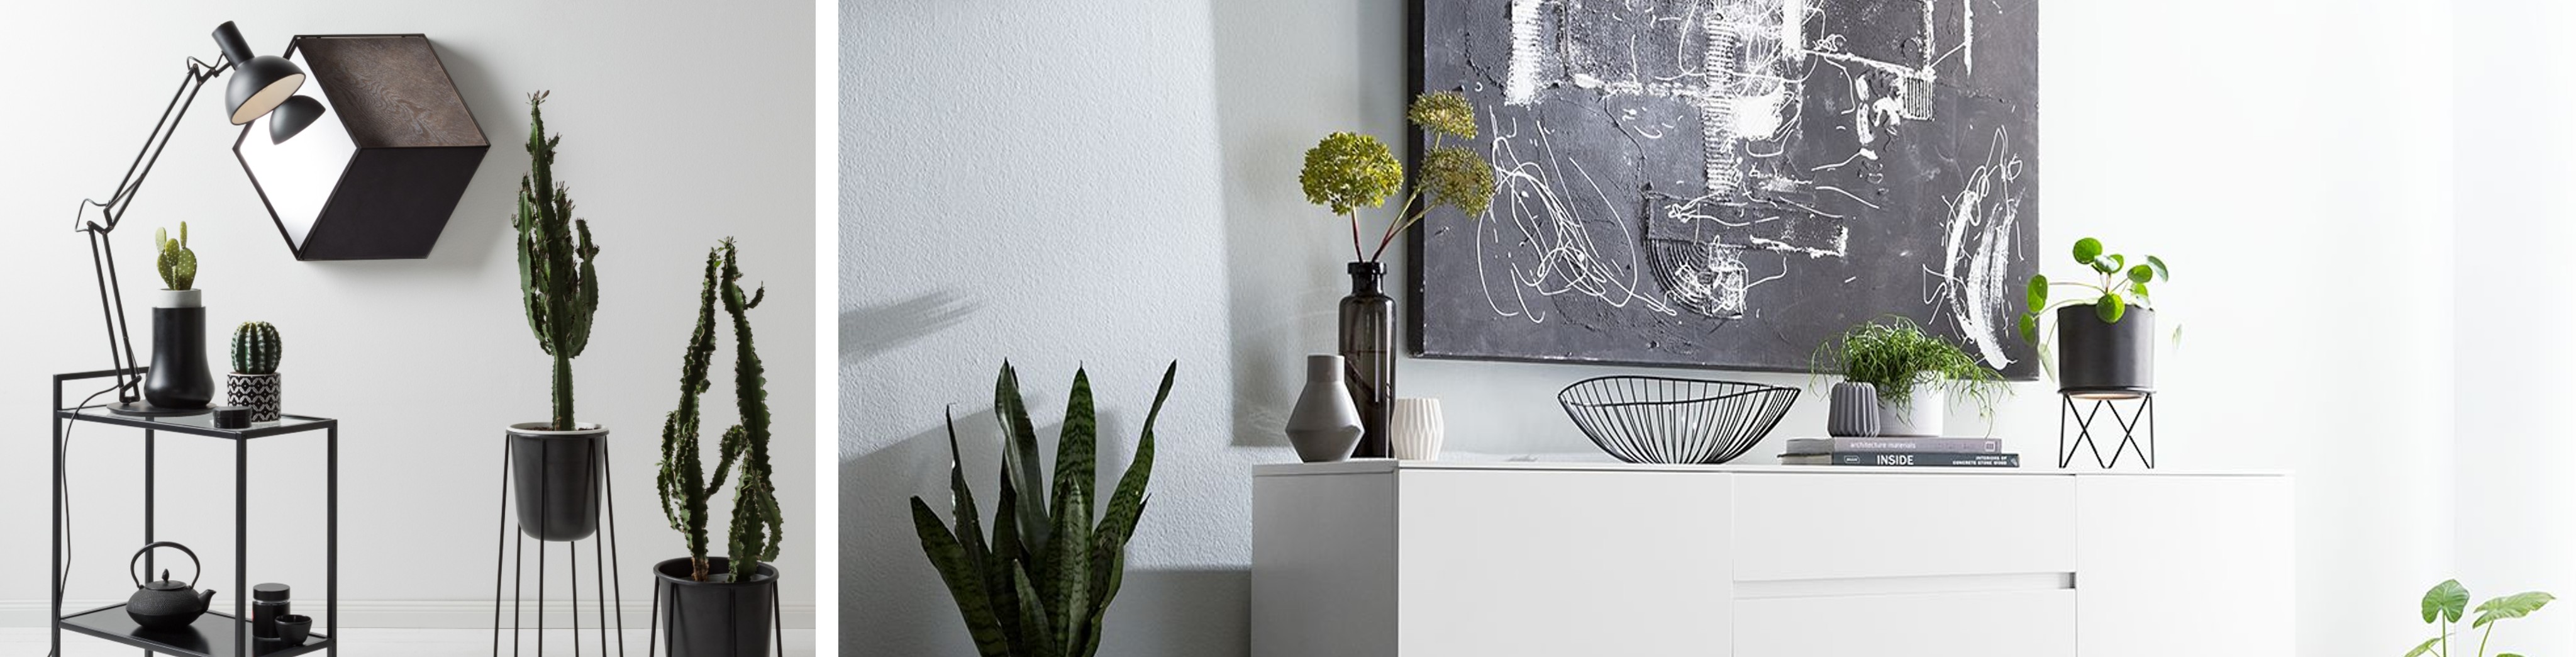 Zelfbewust inrichten met een duidelijk plan voor ogen. Duistere meubels, bloempotten met cactussen en rare planten.